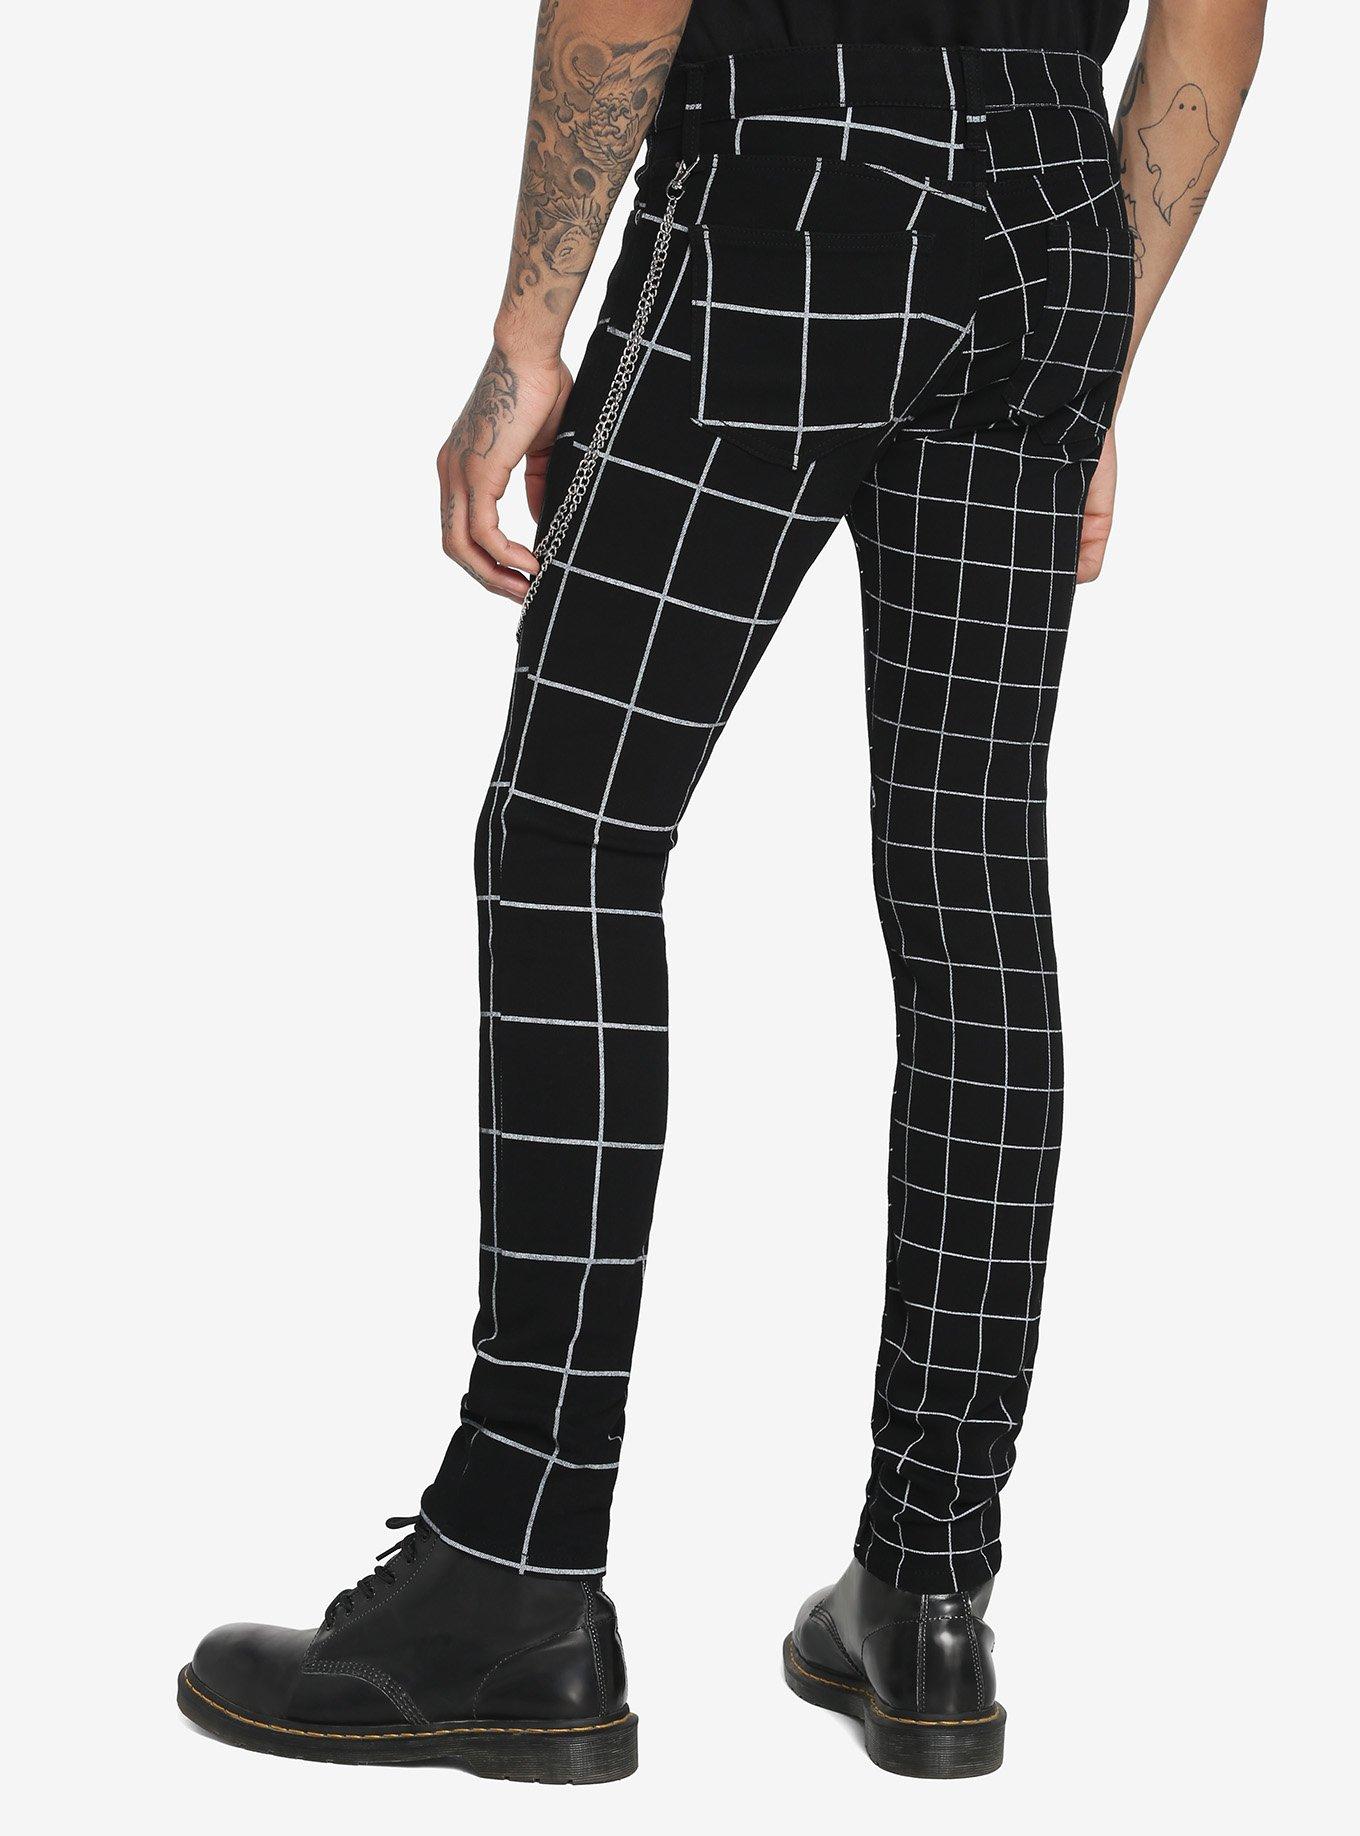 Black & White Double Grid Stinger Jeans, BLACK, alternate